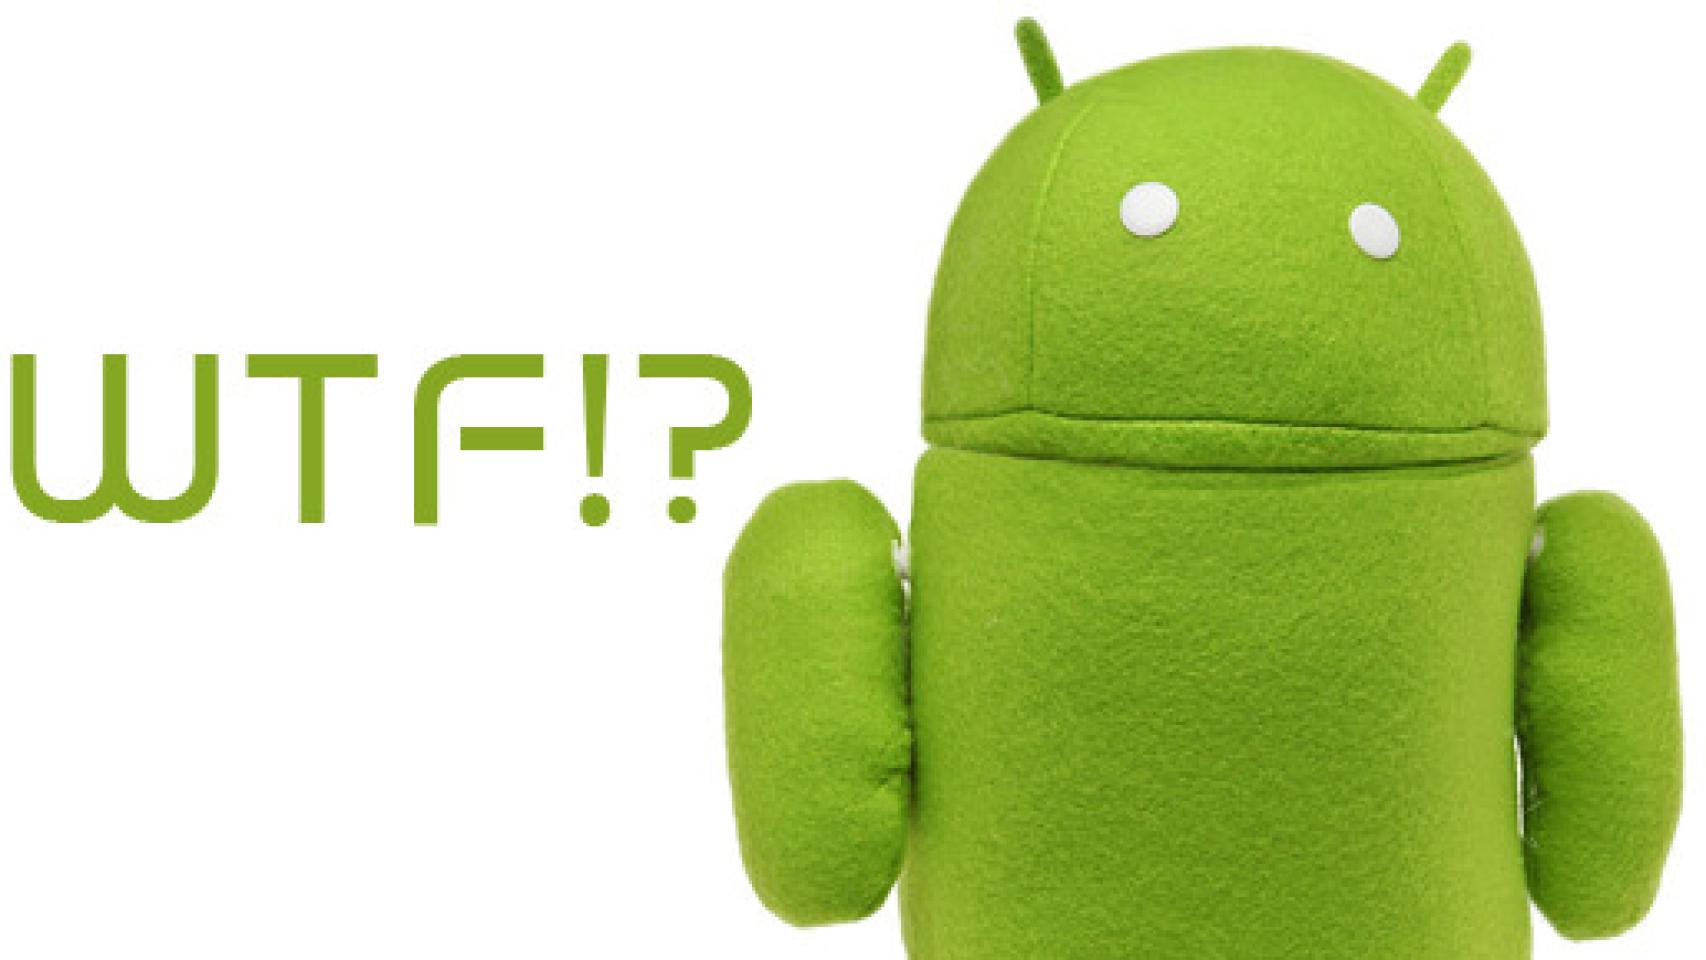 Apps chorras para Android y rumores de la semana #cadavezmasWTF